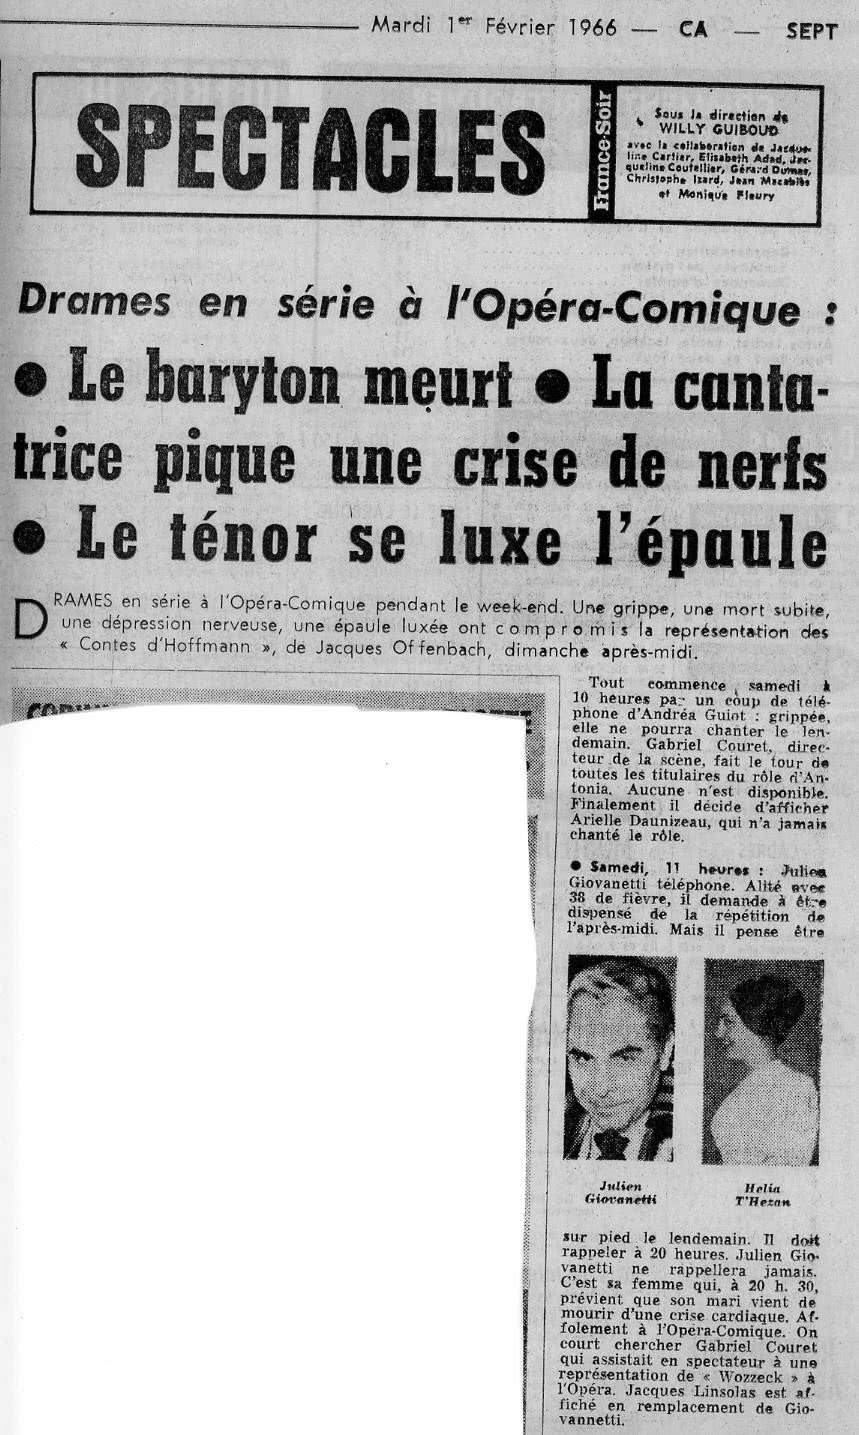 Ariel Daunizeau - Les Contes d'Hoffmann France Soir 1er février 1966